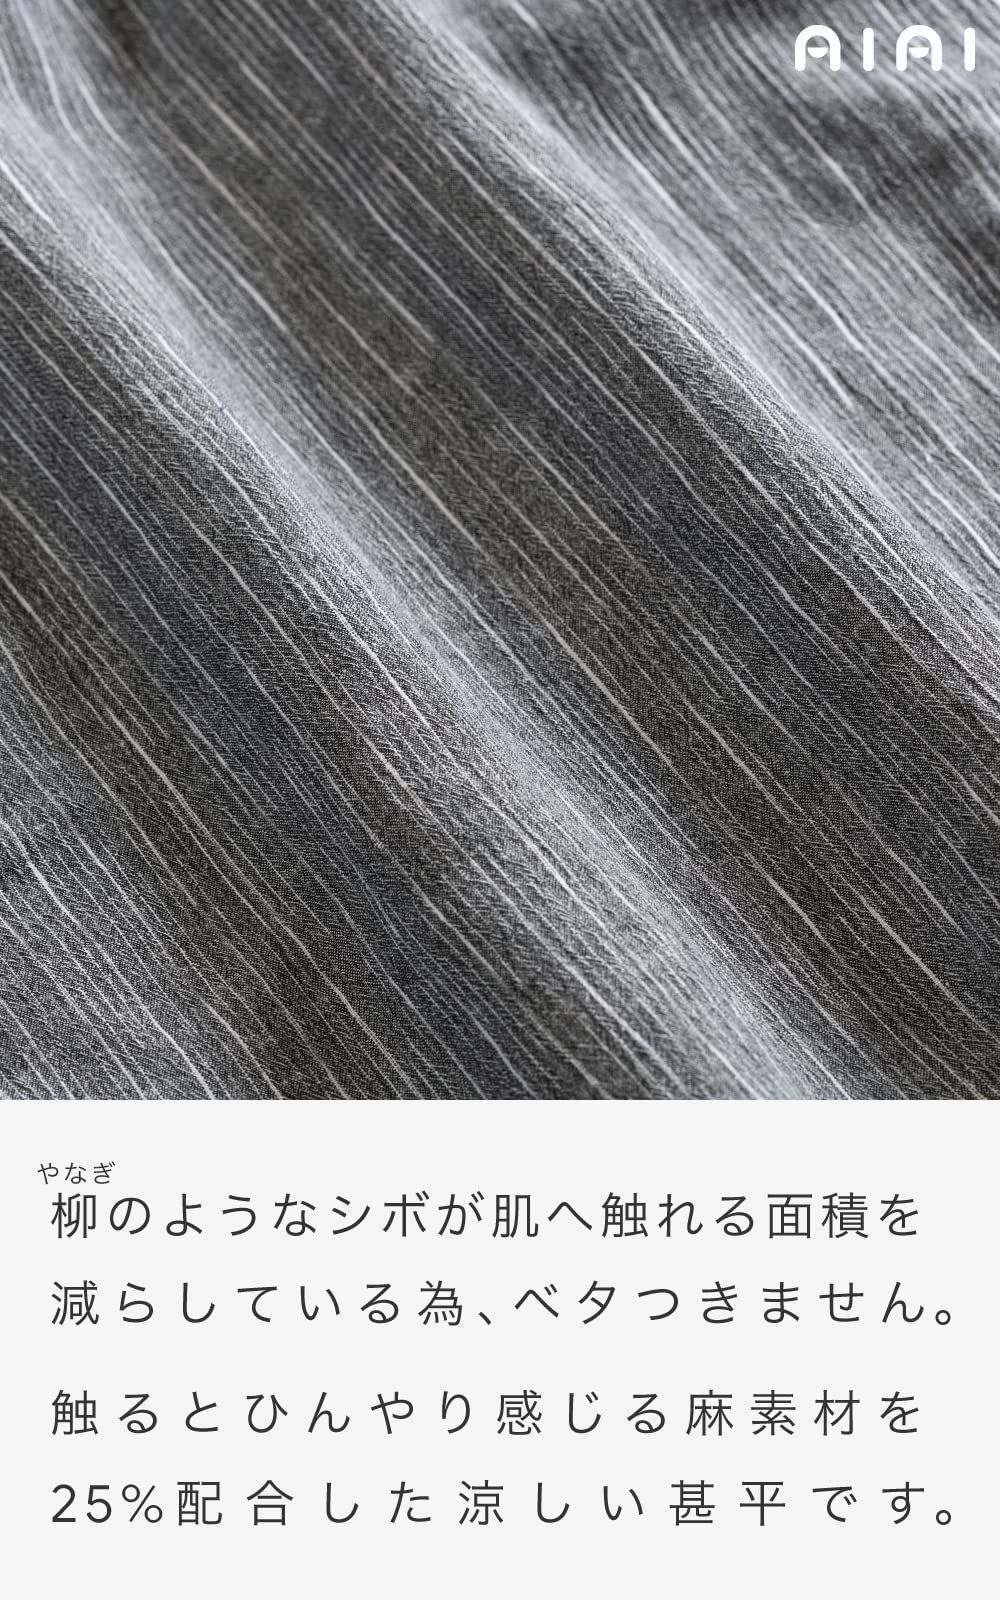 あい藍 絣縞がおしゃれな洗えるメンズ甚平 日本製 綿75% 麻25% 楊柳